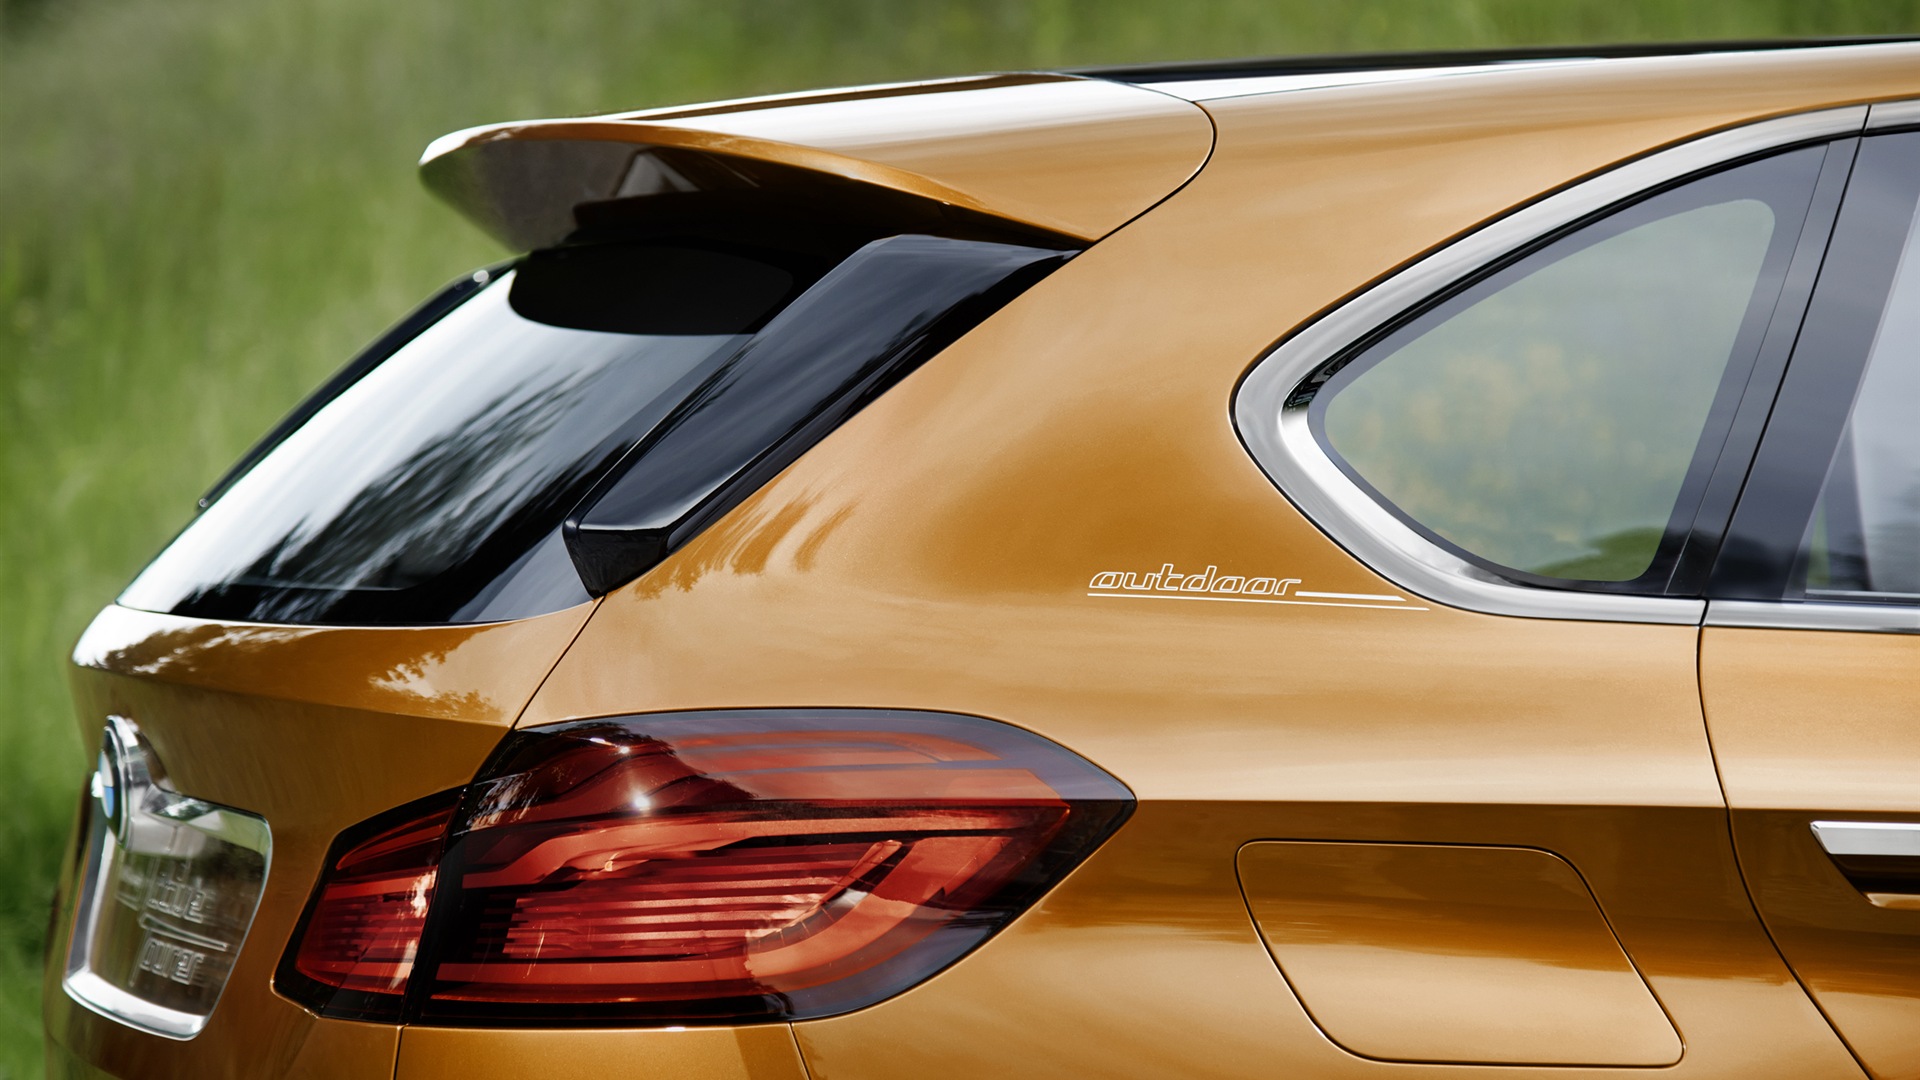 2013 BMW Concept Active Tourer 宝马旅行车 高清壁纸19 - 1920x1080